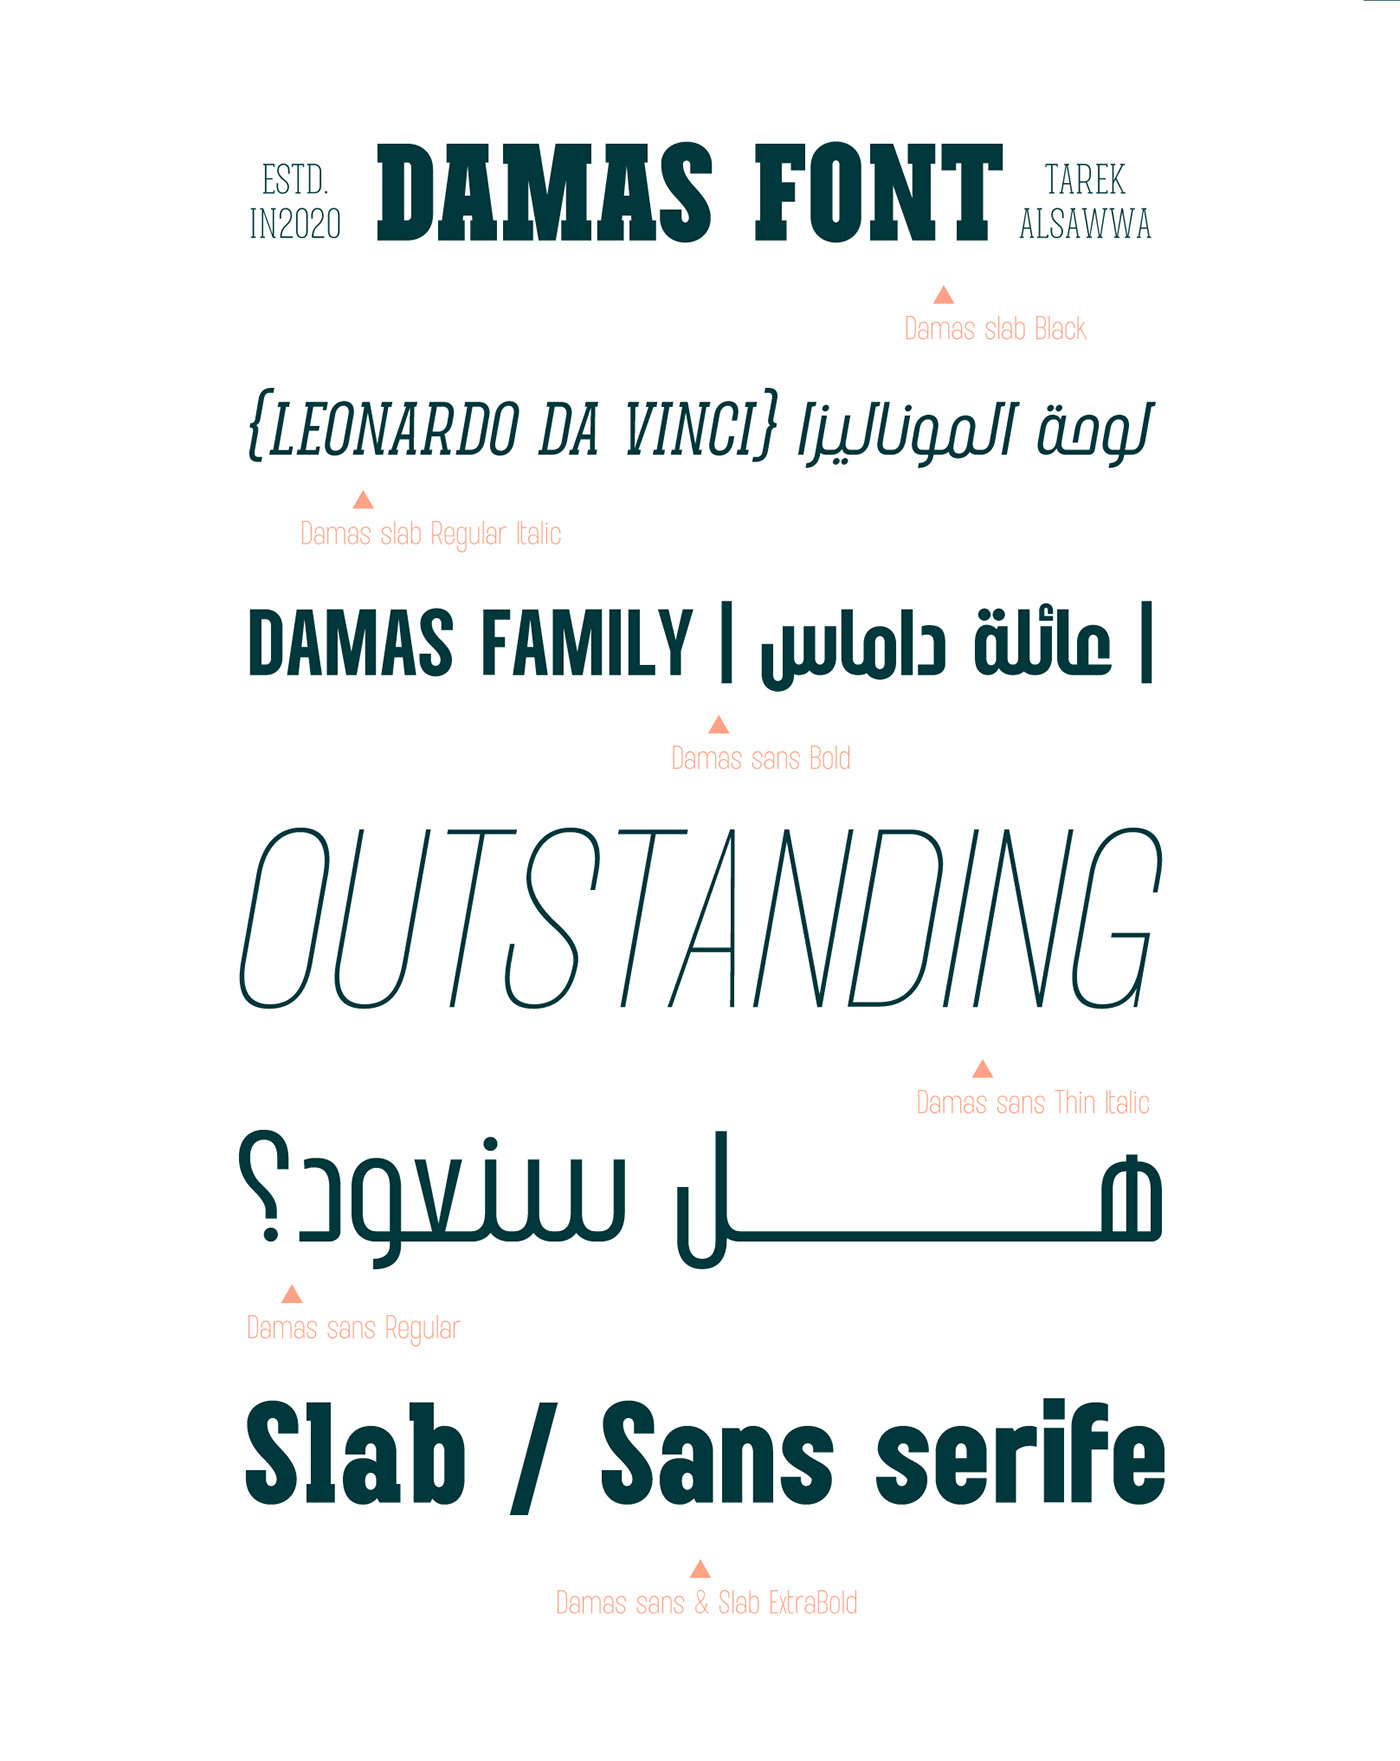 Advertising  arabic font branding  Damas font font latin font logo Typeface typographic webfont